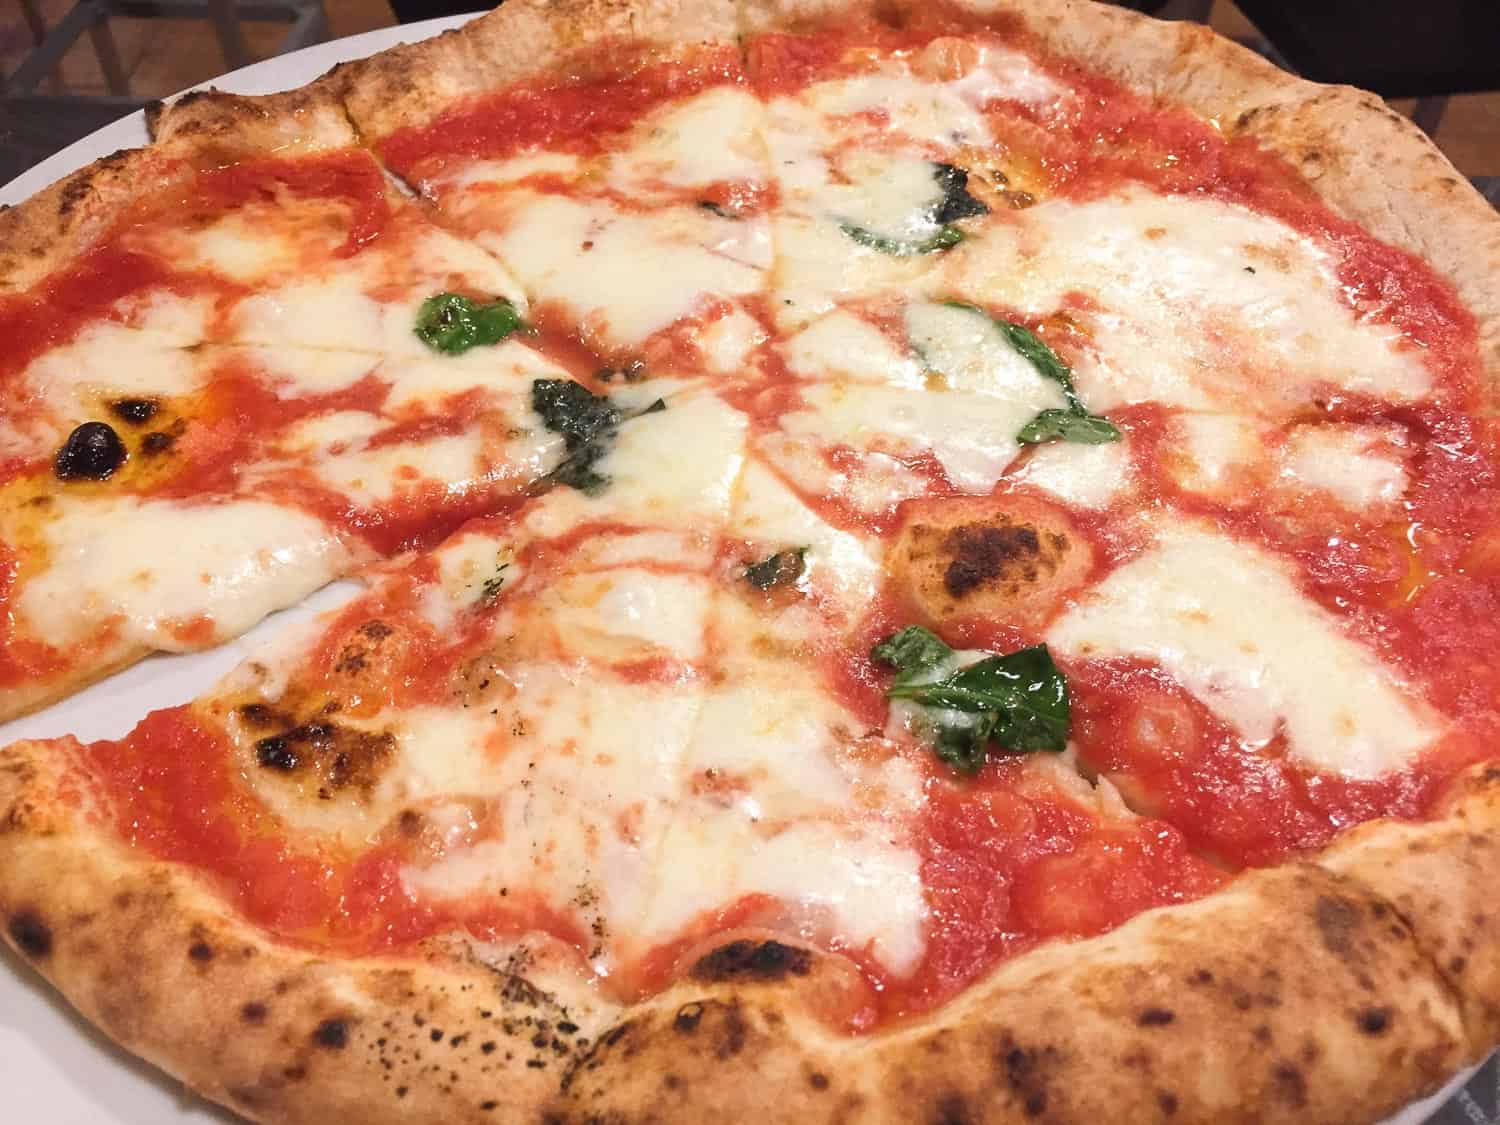 Margherita pizza at Pomodoro e Basilico, Rapallo